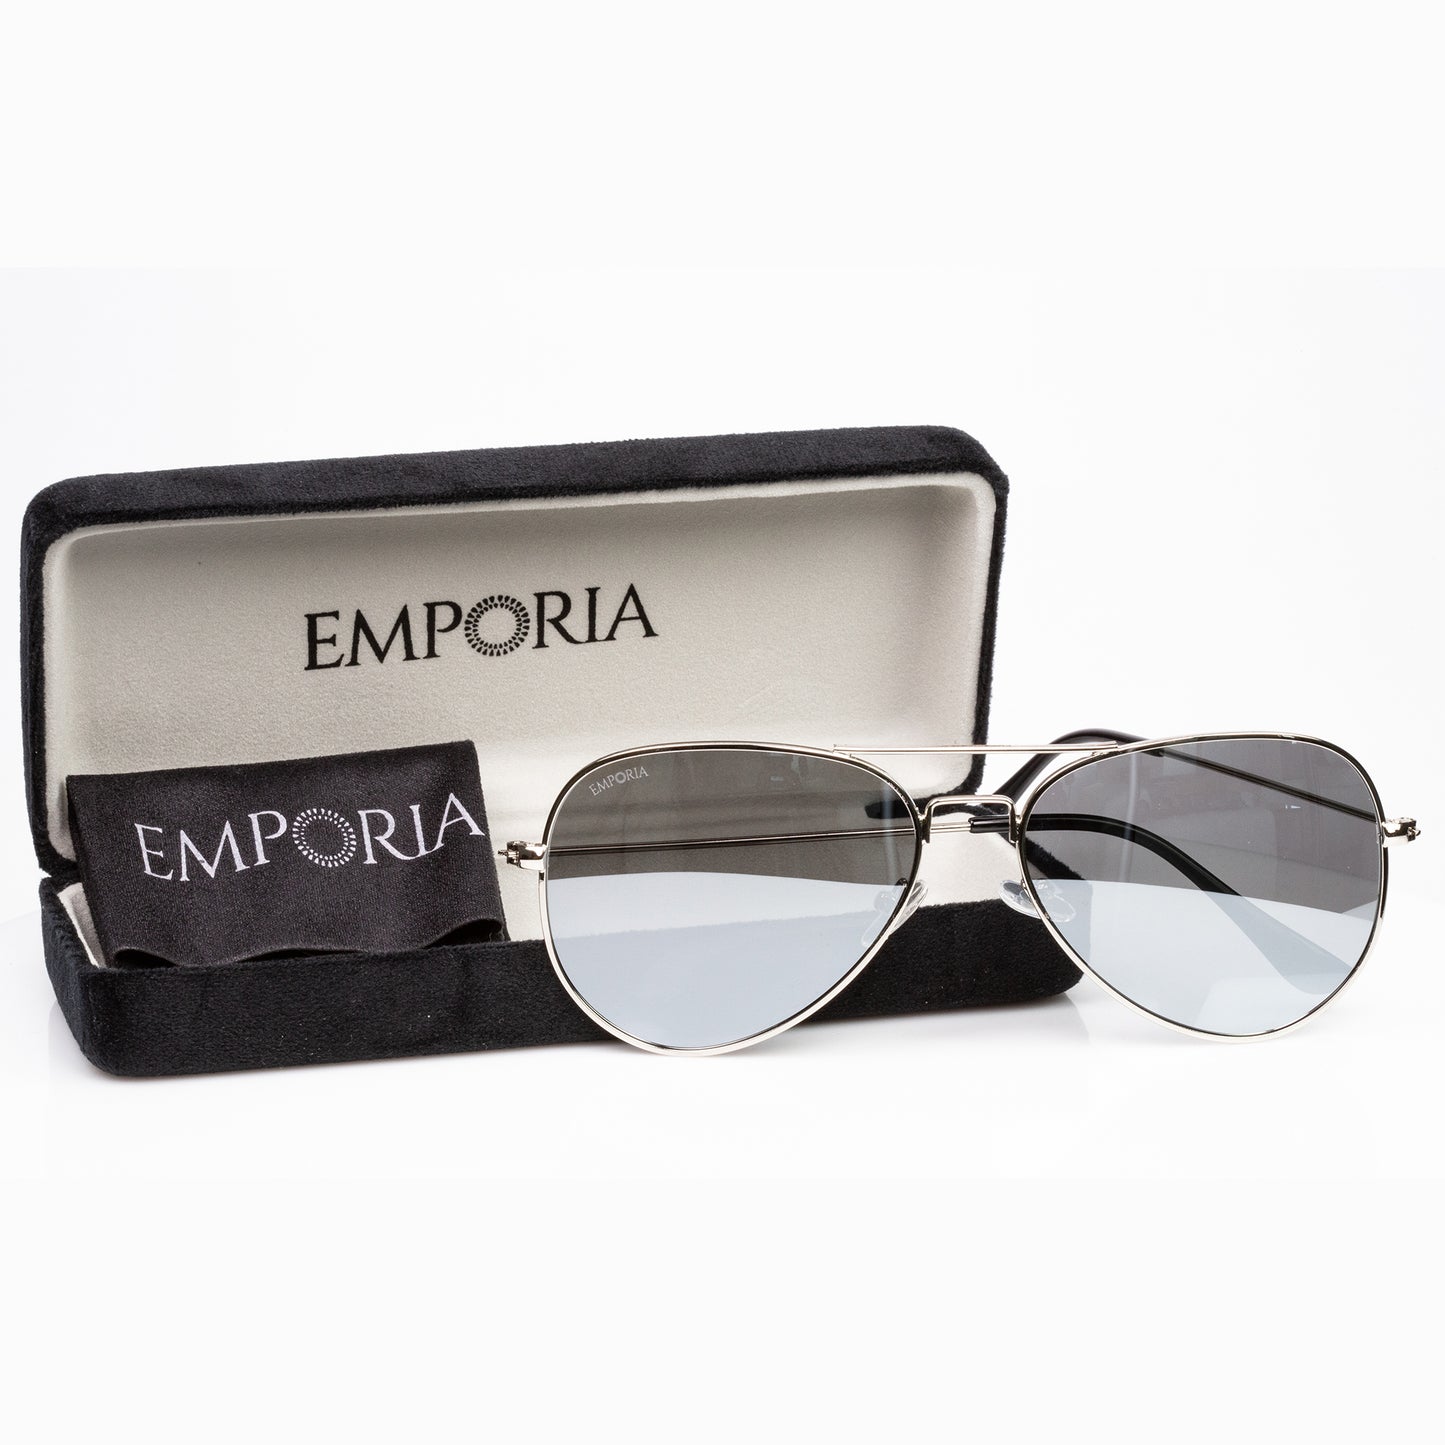 Emporia Italy - Série Aviator "CRISTAL", óculos de sol com filtro UV polarizados com etojo rígido e pano limpeza, lentes de proteção solar de cor preto, armação prateada